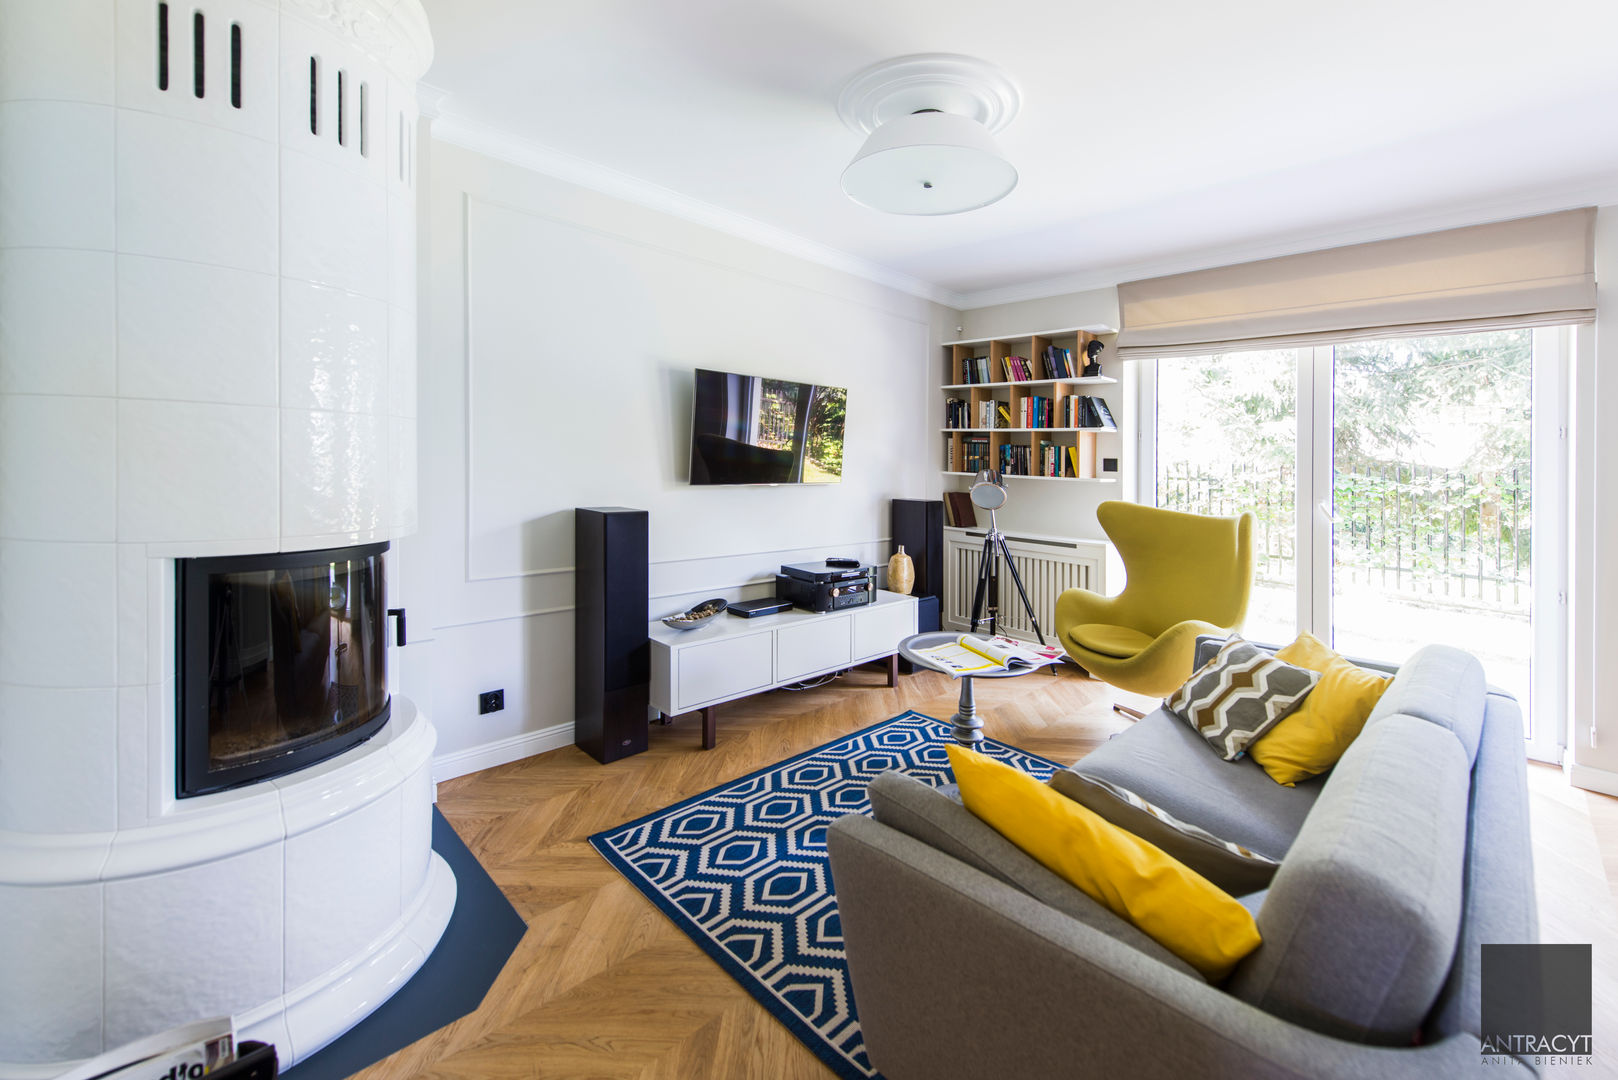 Mieszkanie w zabudowie szeregowej, styl eklektyczny - Białystok, Antracyt Antracyt Eclectic style living room